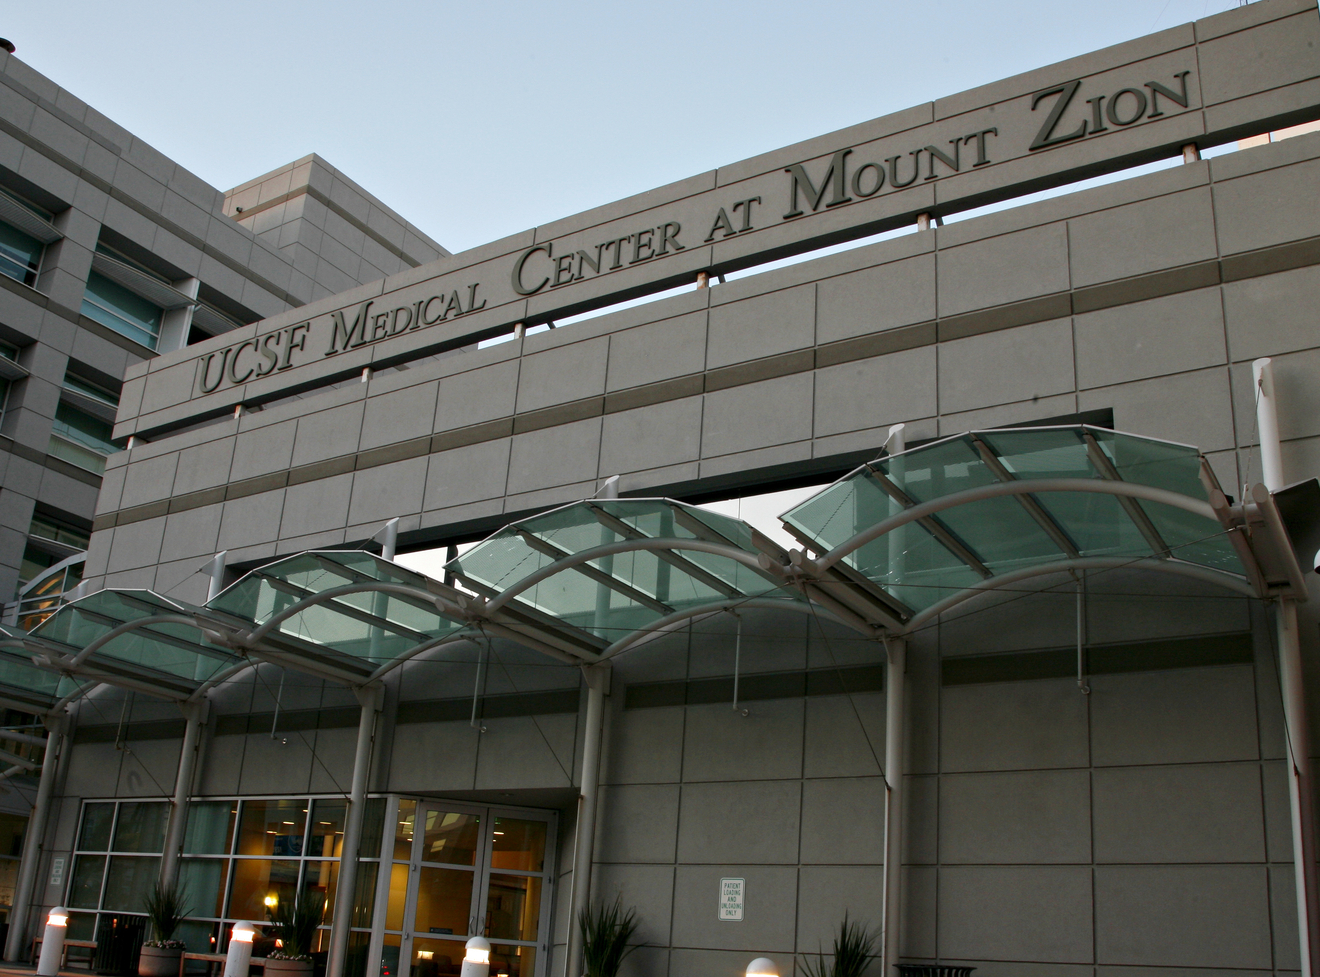 Mount Zion Campus